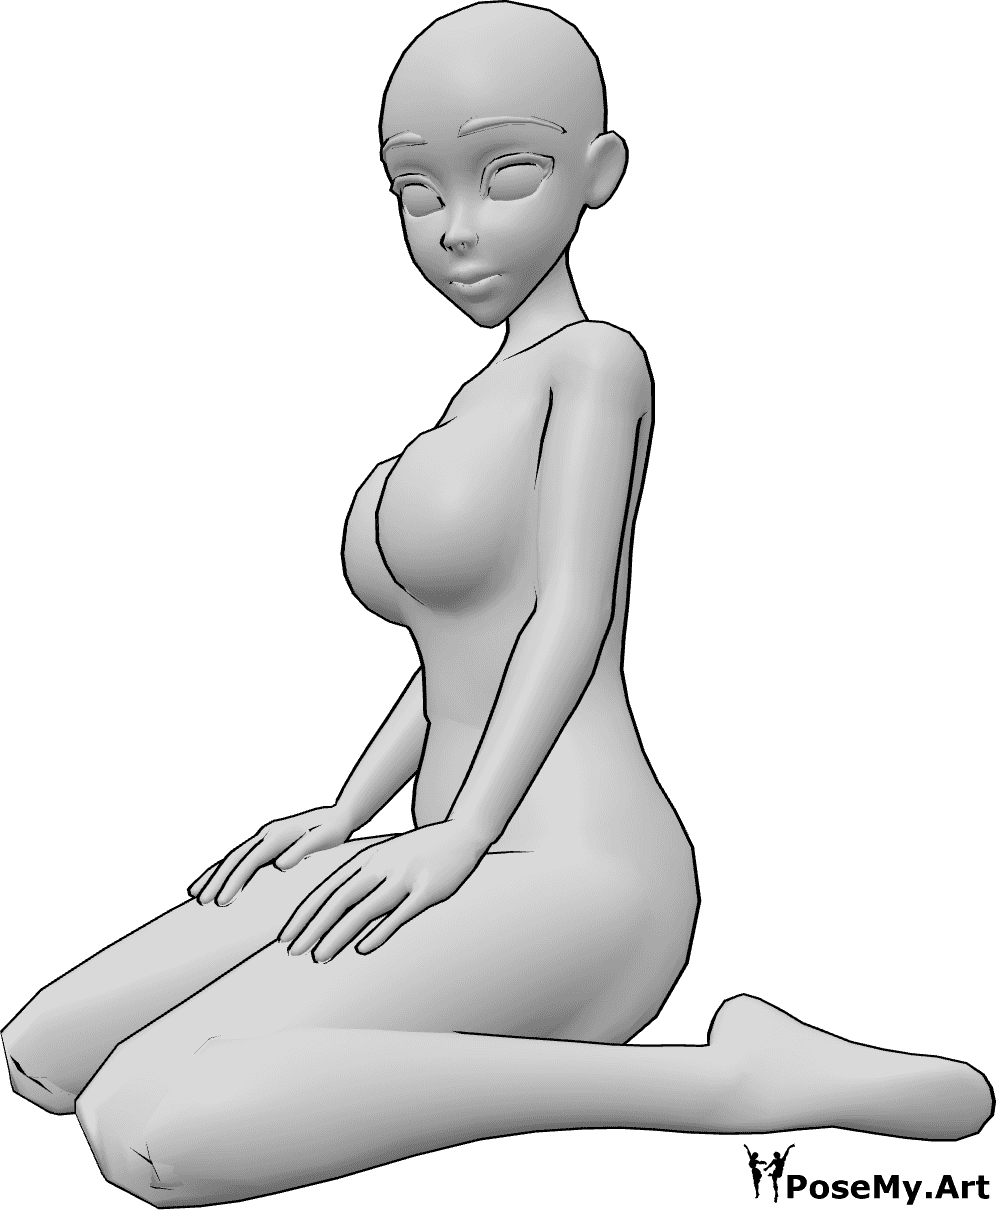 Posen-Referenz- Anime süße sitzende Pose - Anime-Frau sitzt in einer niedlichen Pose, kniend und nach links schauend